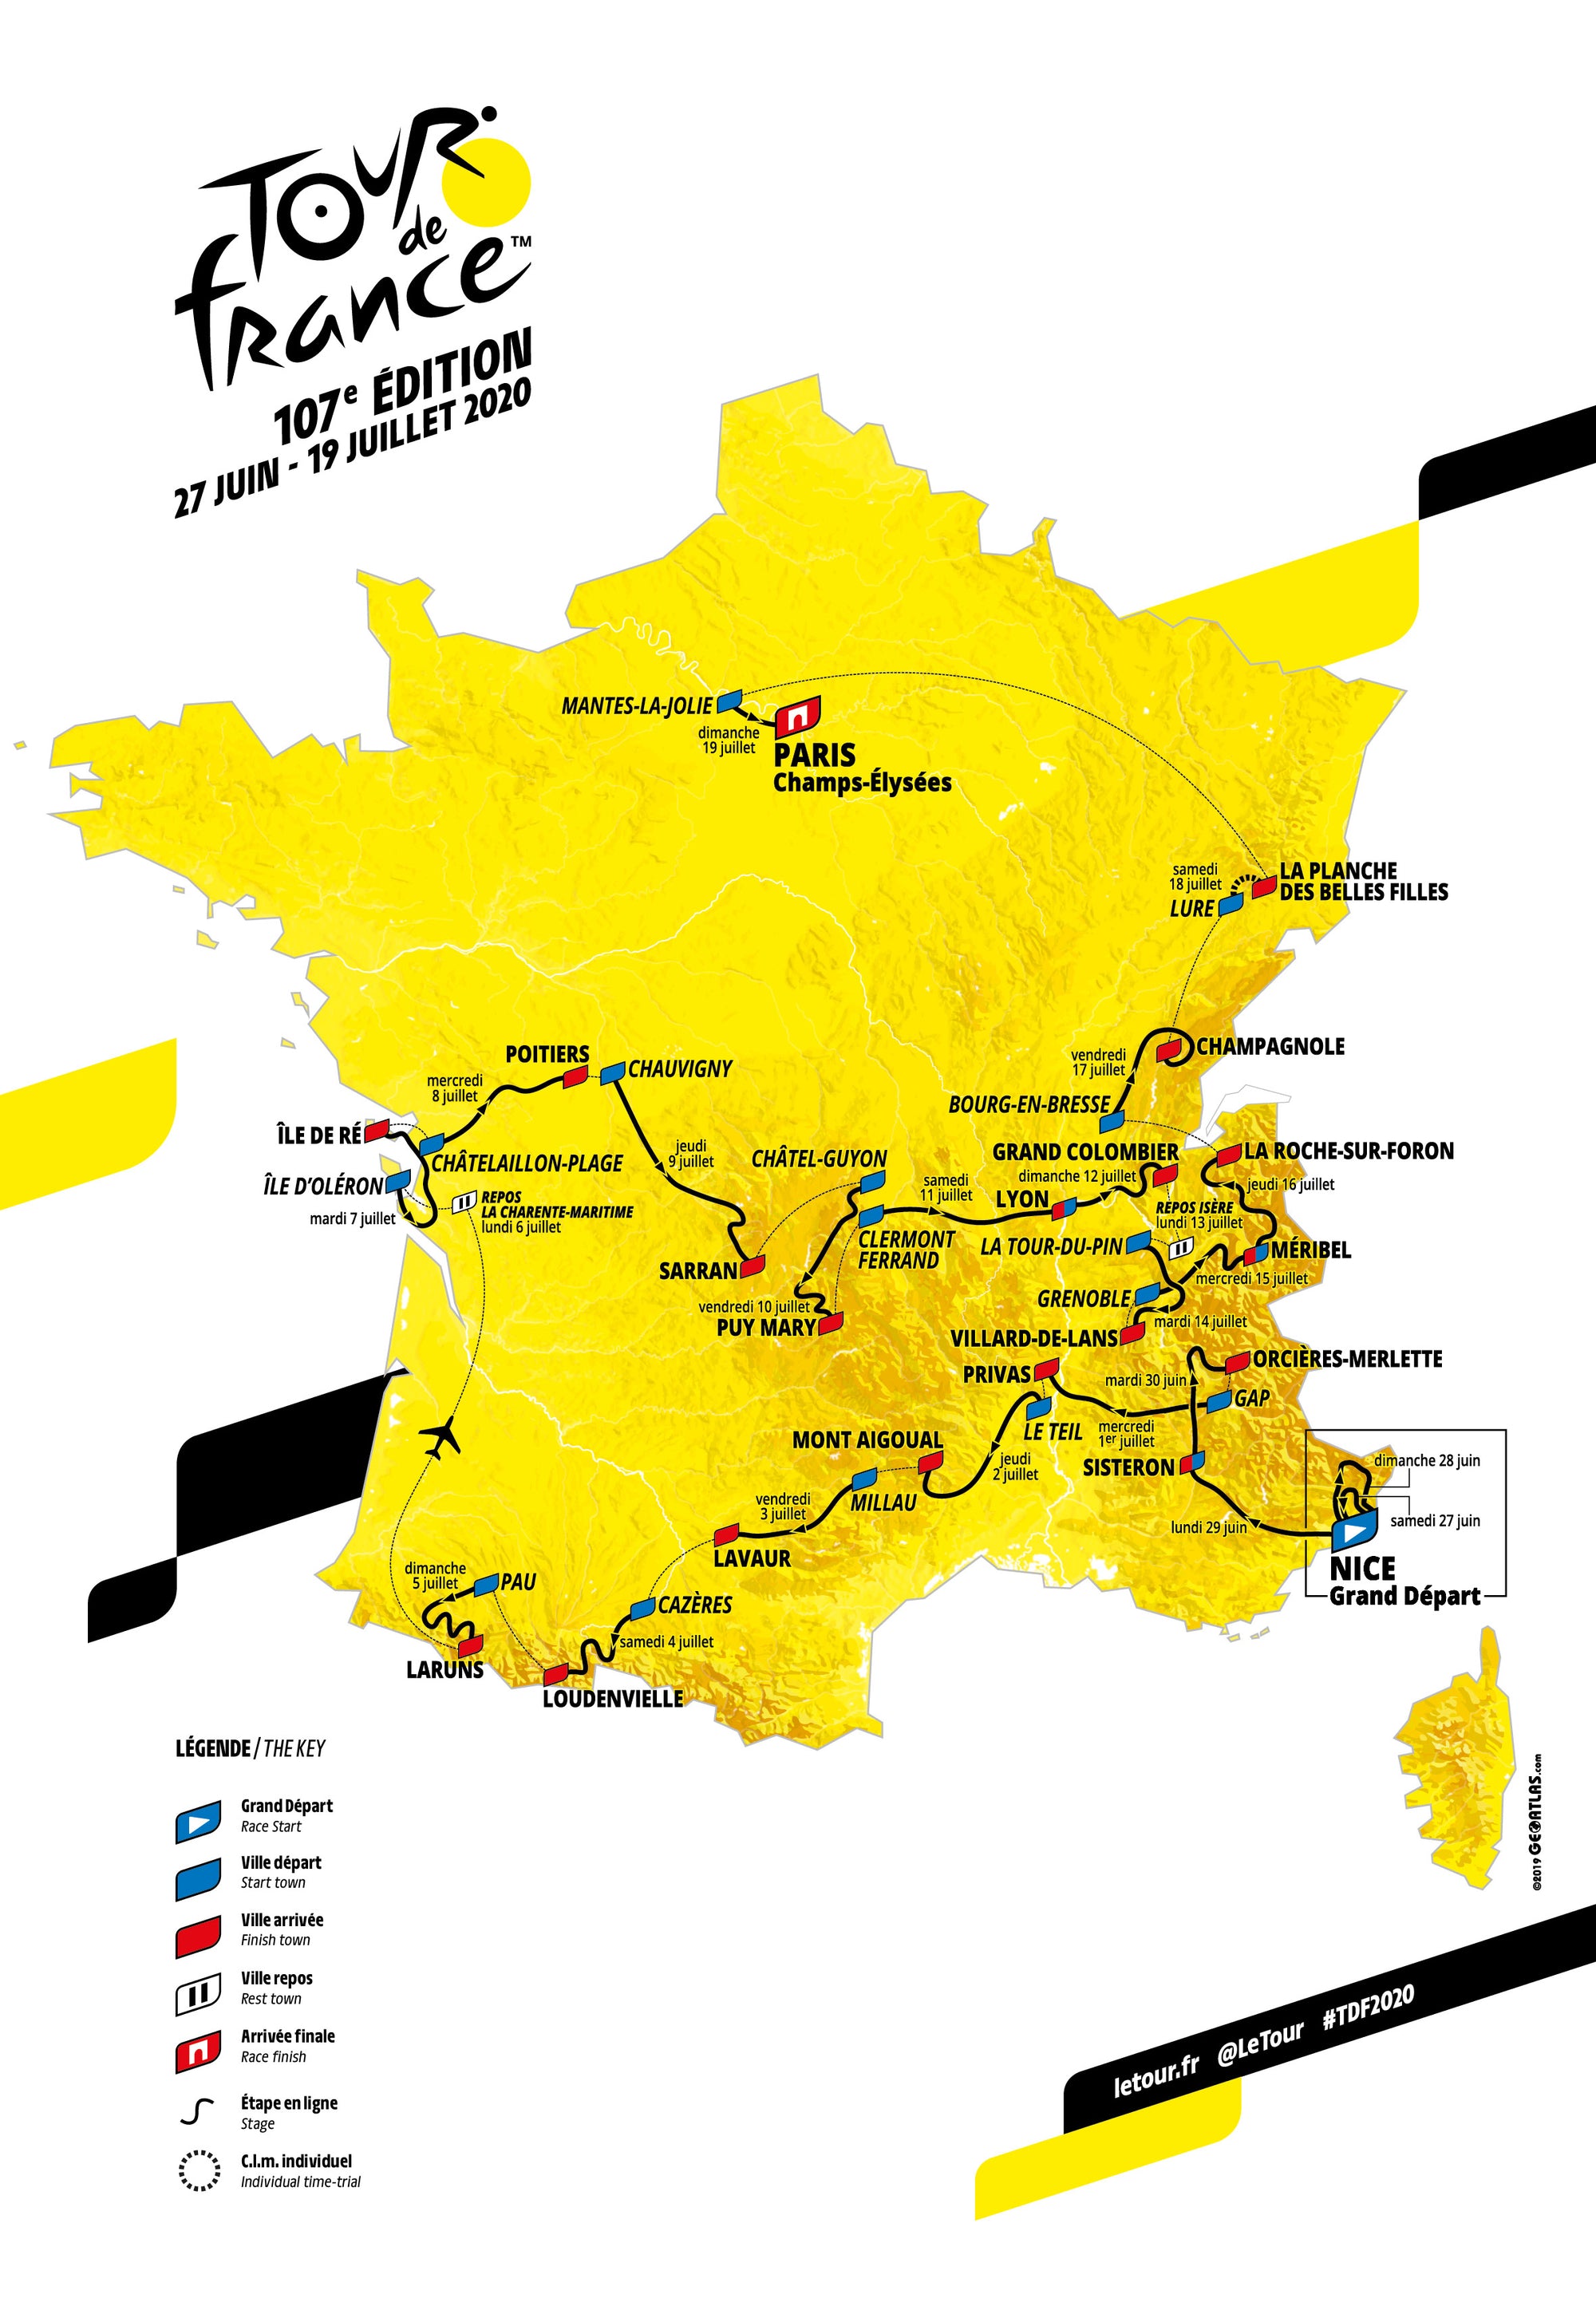 Tour de France 2020 - Route Presentation - Paris 15.10.19